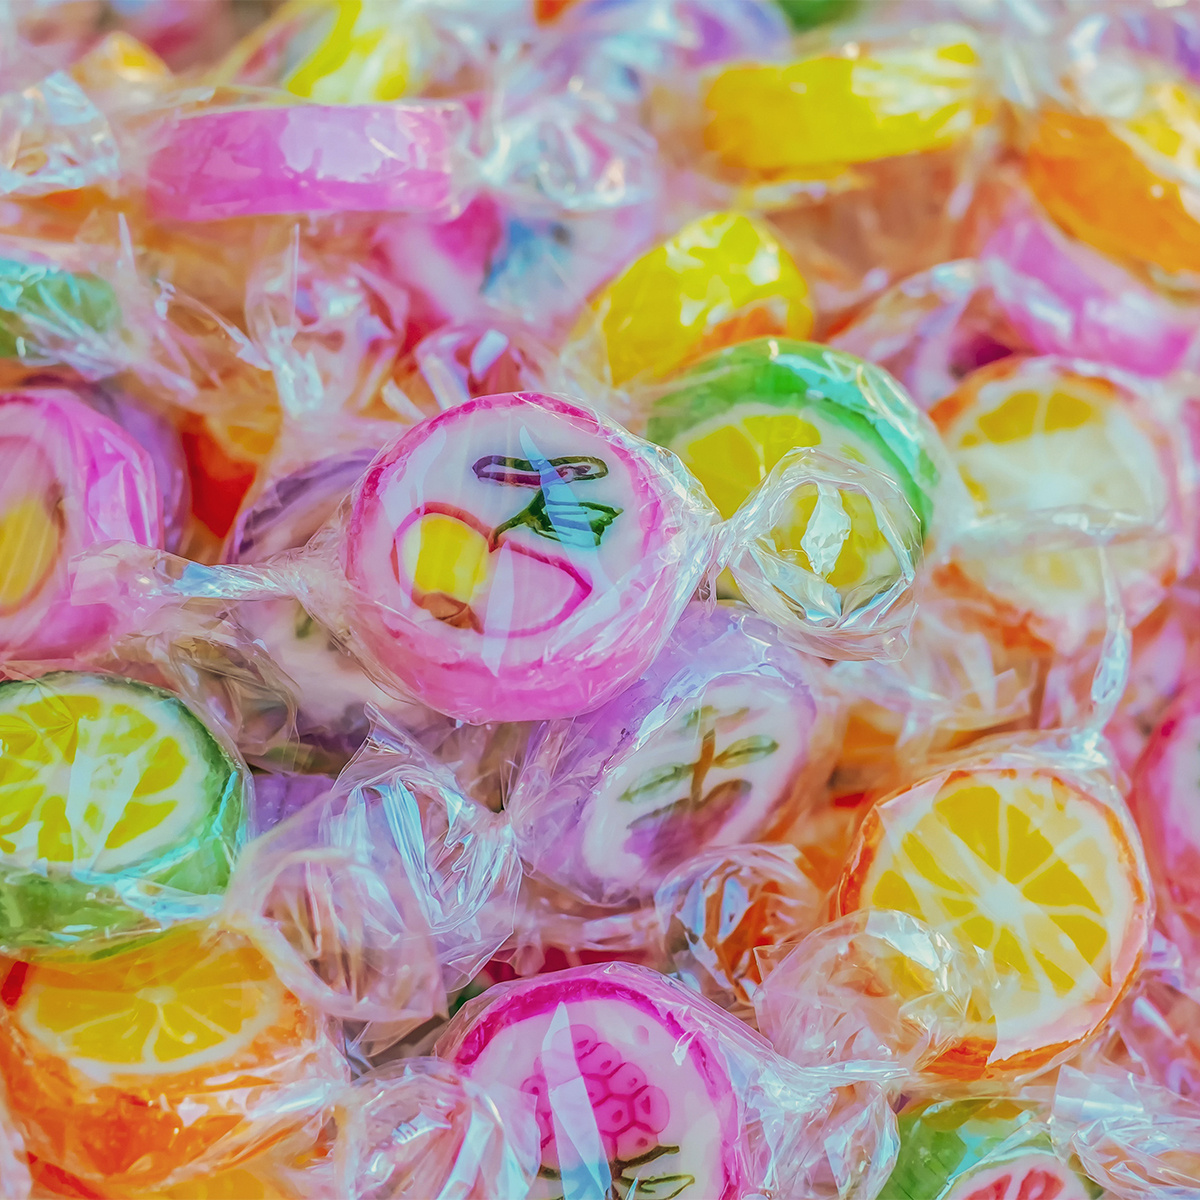 300Pcs Cake Pop Sticks and Wrappers Kit, 100Pcs 6IN Lollipop Stick, 100pcs  Clear Candy Treat Bags Parcel, 100pcs Gold Twist Ties for Lollipops